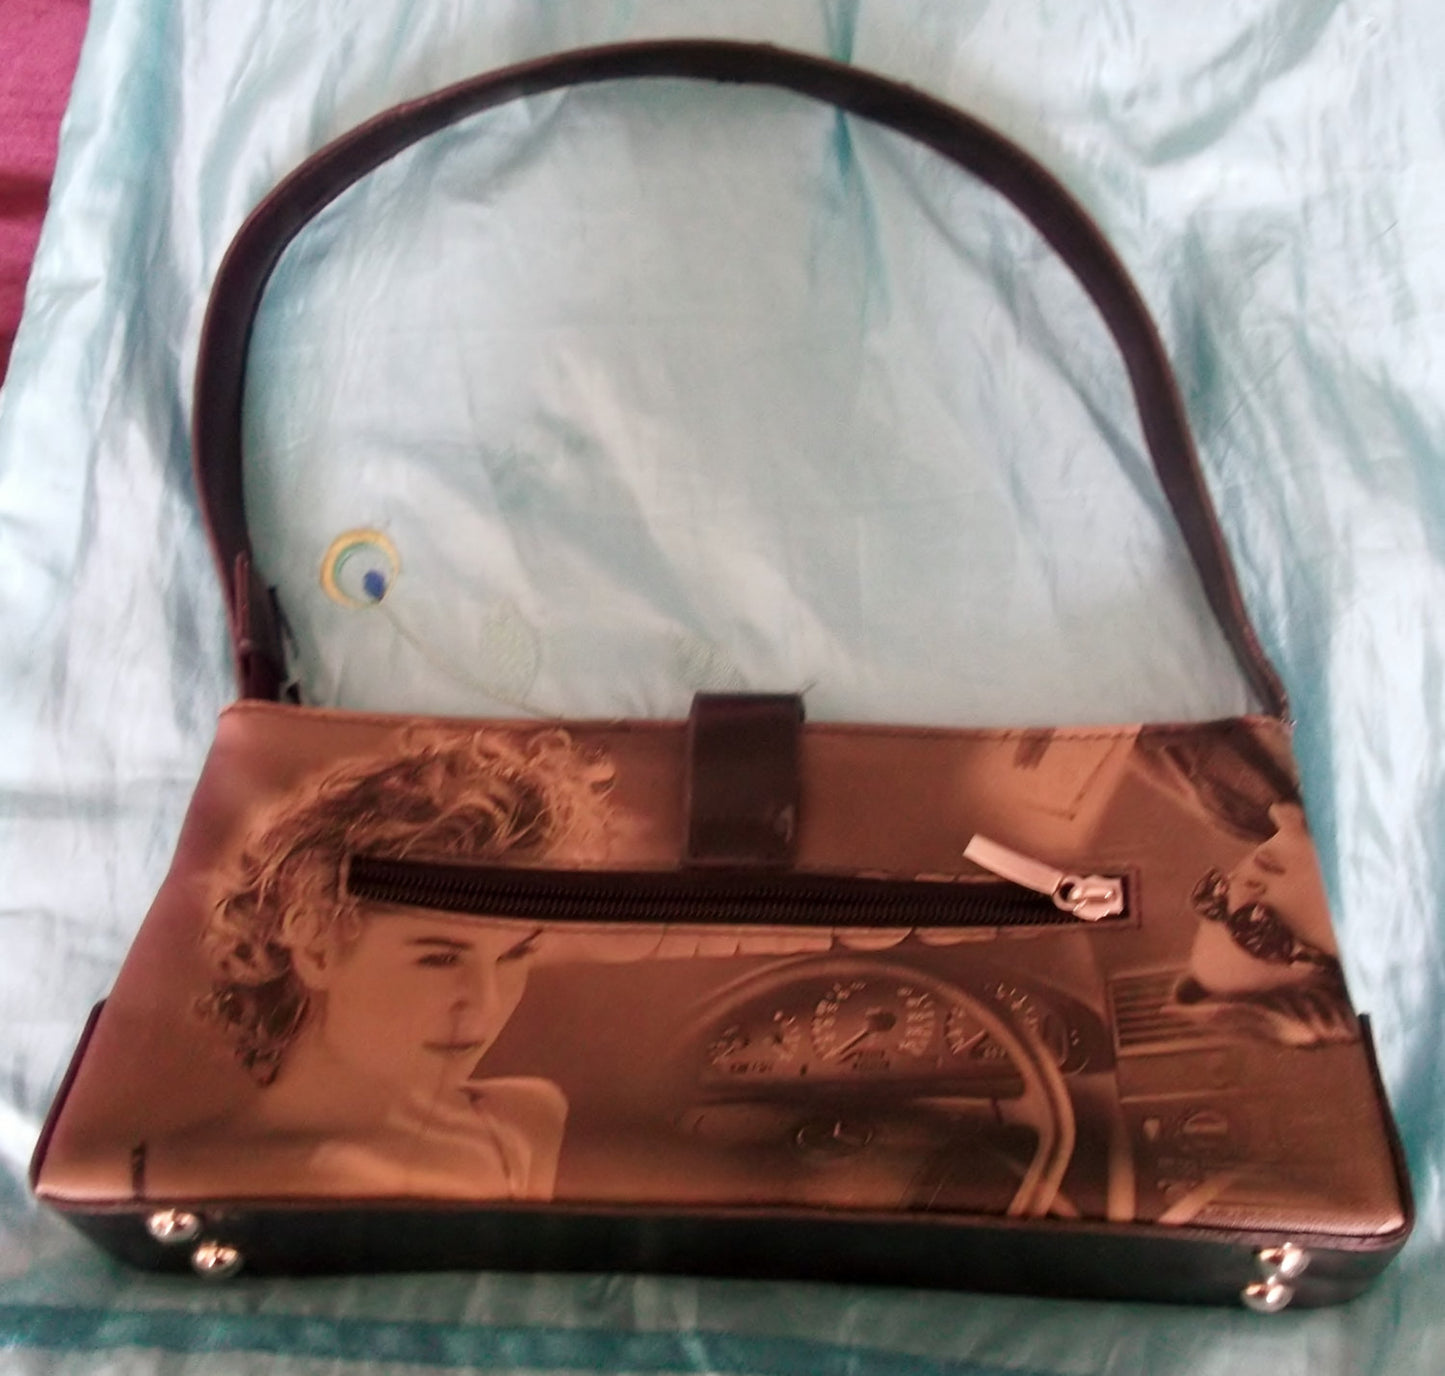 Retro Chic Vintage handbag with 50's style image design, gold clasp. Wonkey Donkey Bazaar